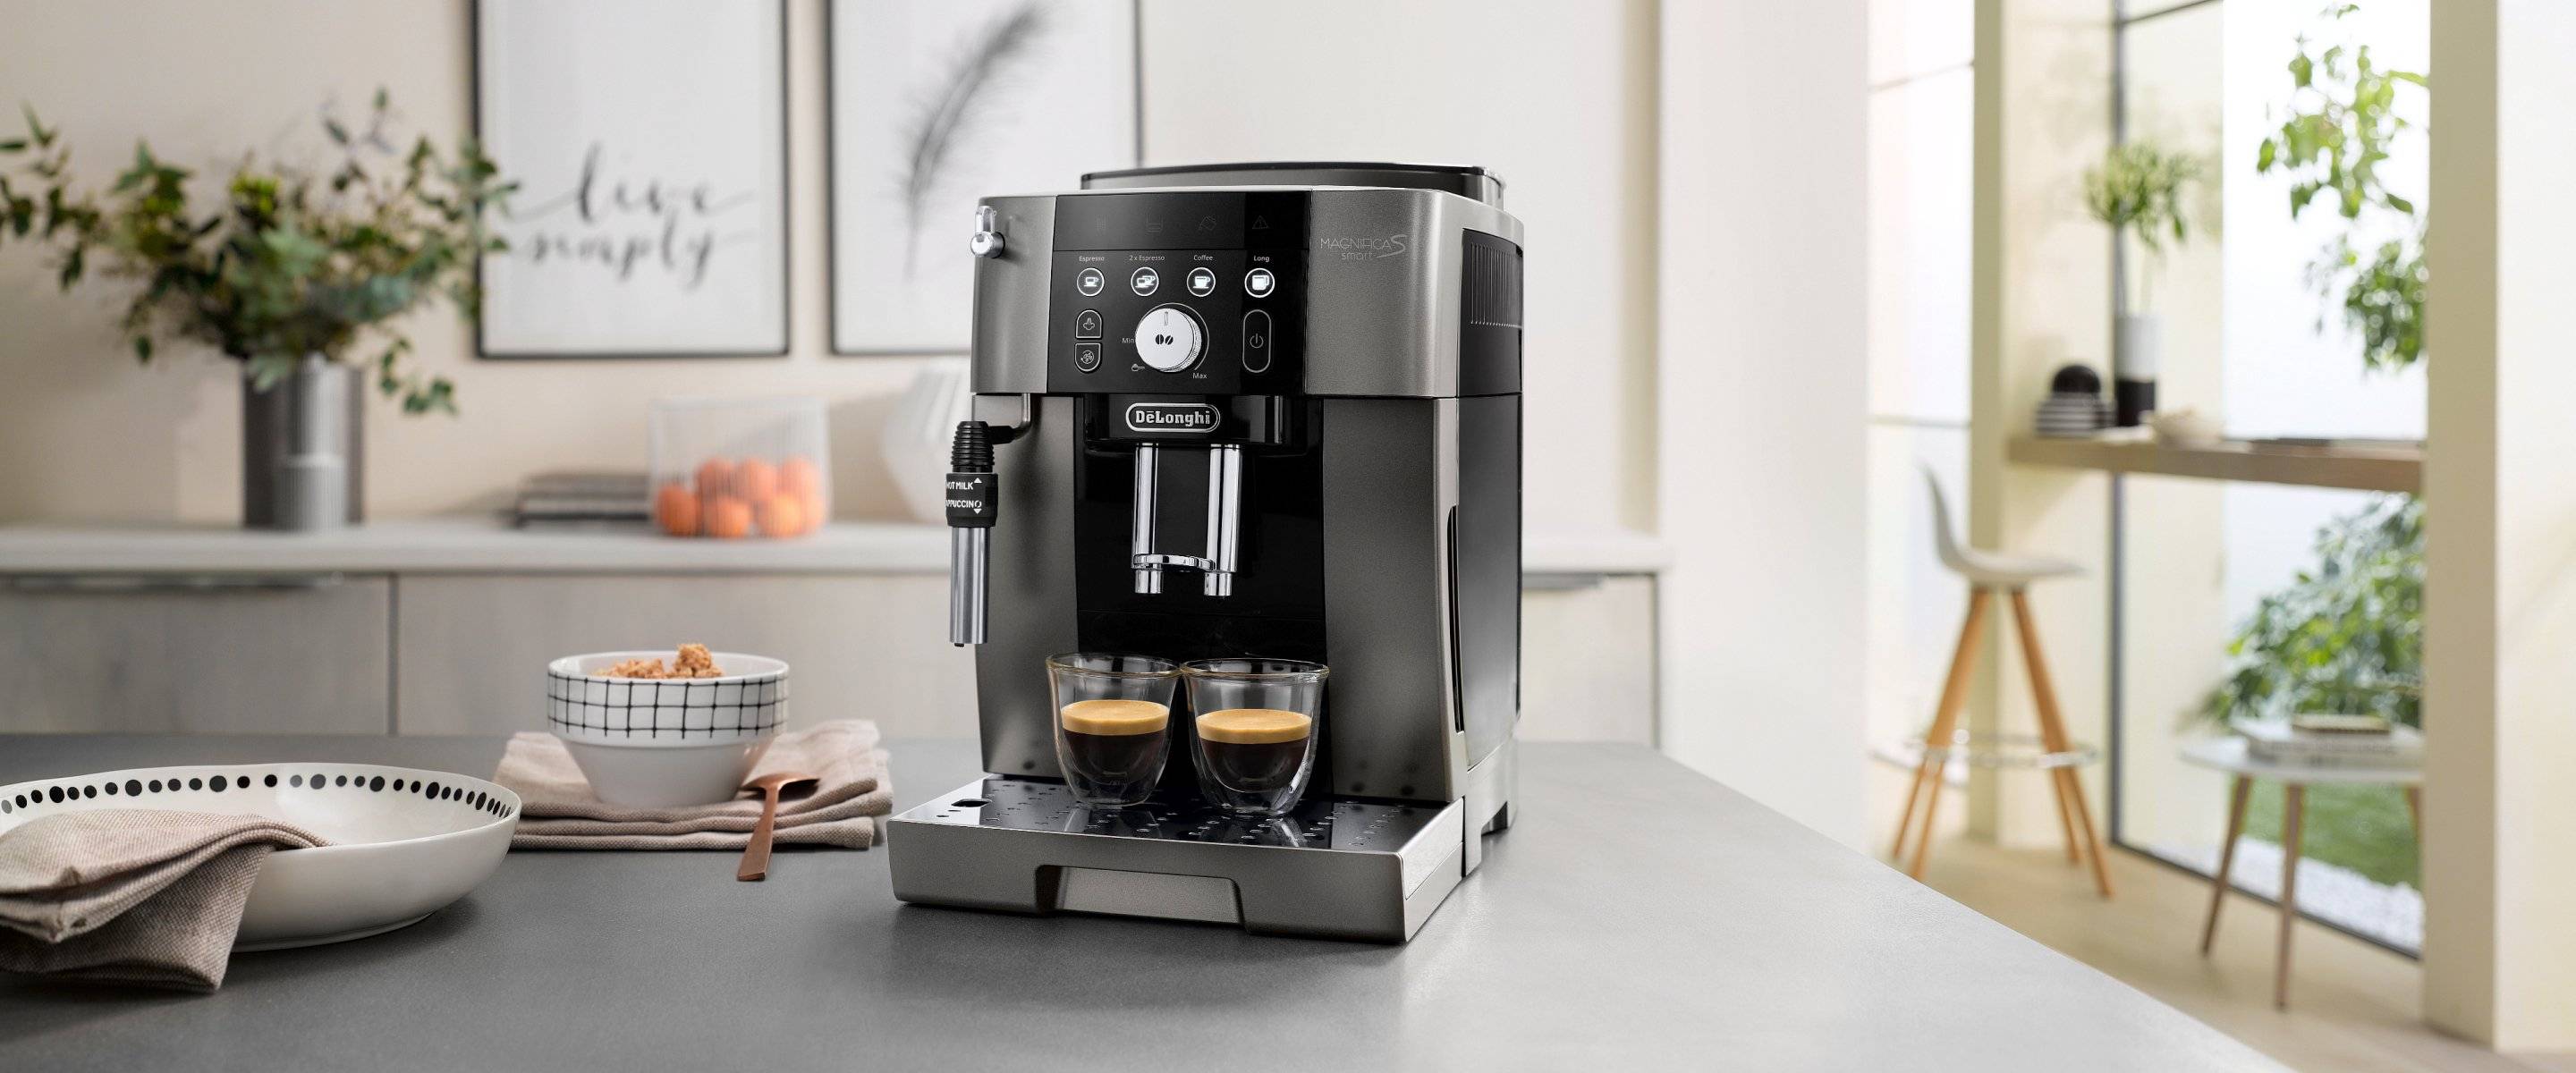 Топ-10 лучших рожковых кофемашин для дома: рейтинг 2020-2021 года и обзор популярных моделей с капучинатором, а также их сравнение с капельными устройствами